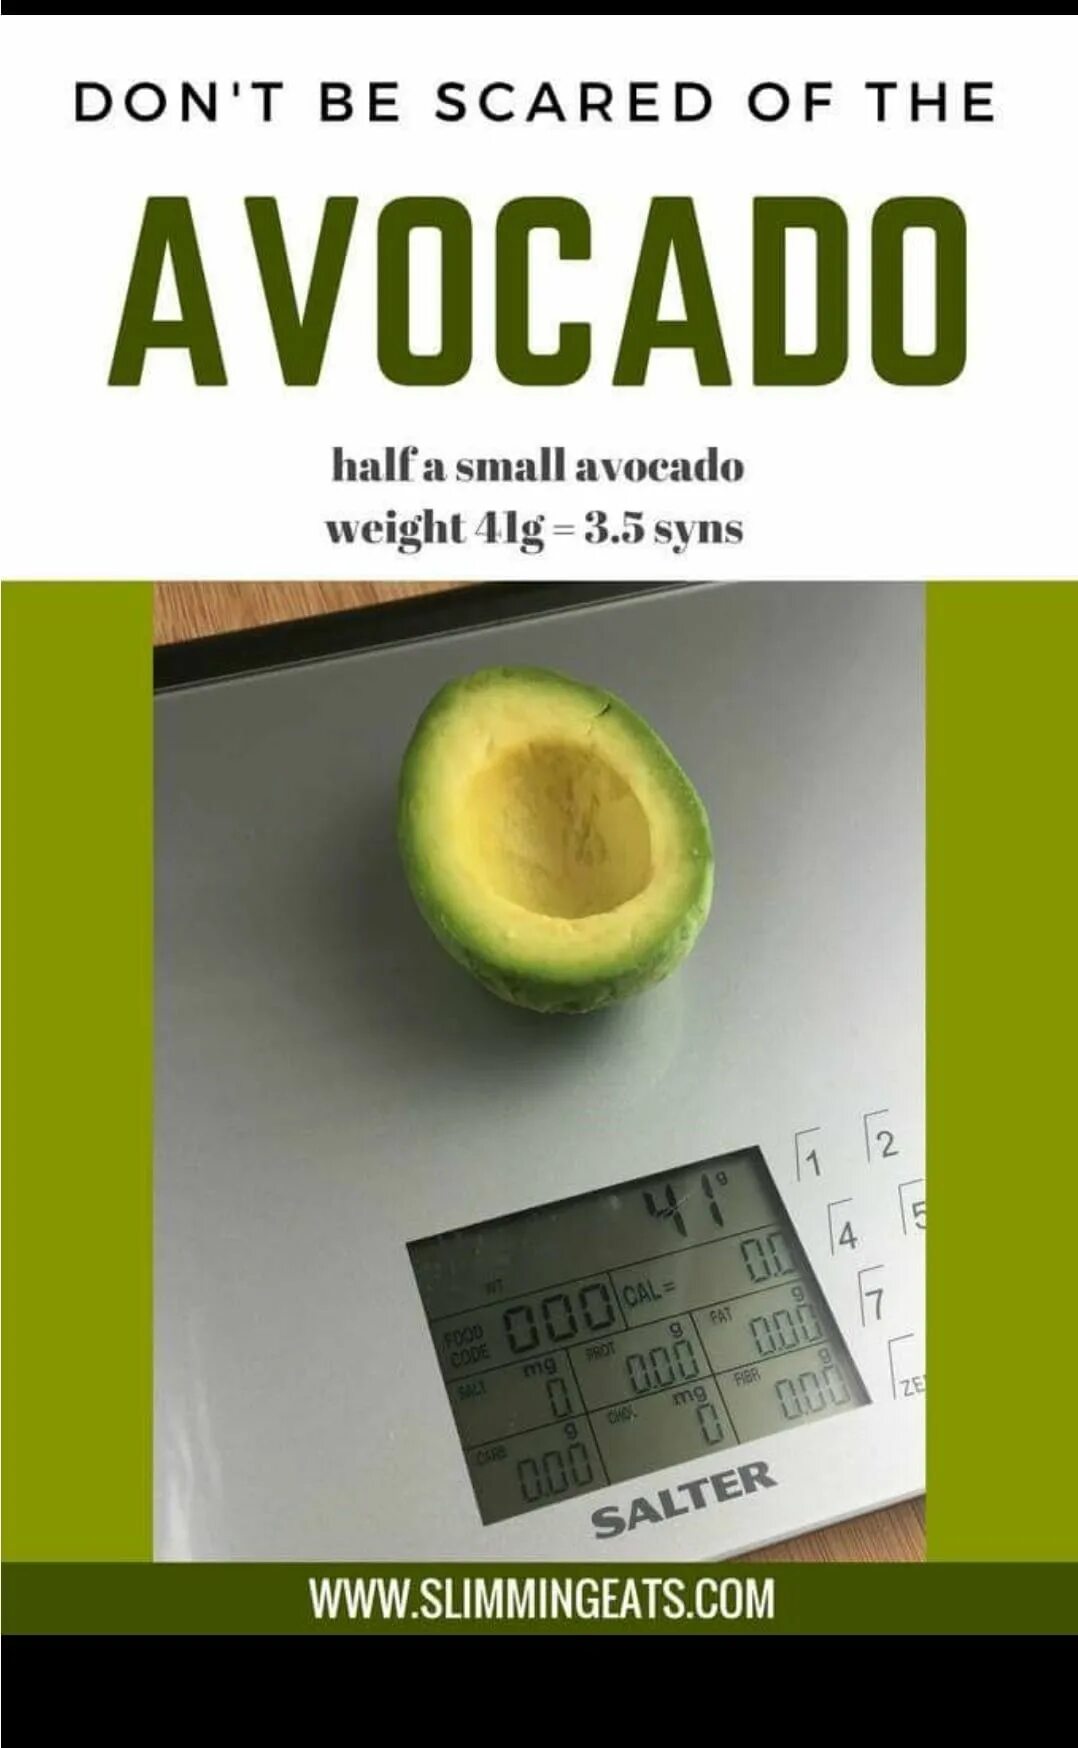 Авокадо грамм. Вес авокадо 1 шт. Вес мякоти авокадо. Вес половины авокадо. Сколько весит авокадо без кожуры и косточки